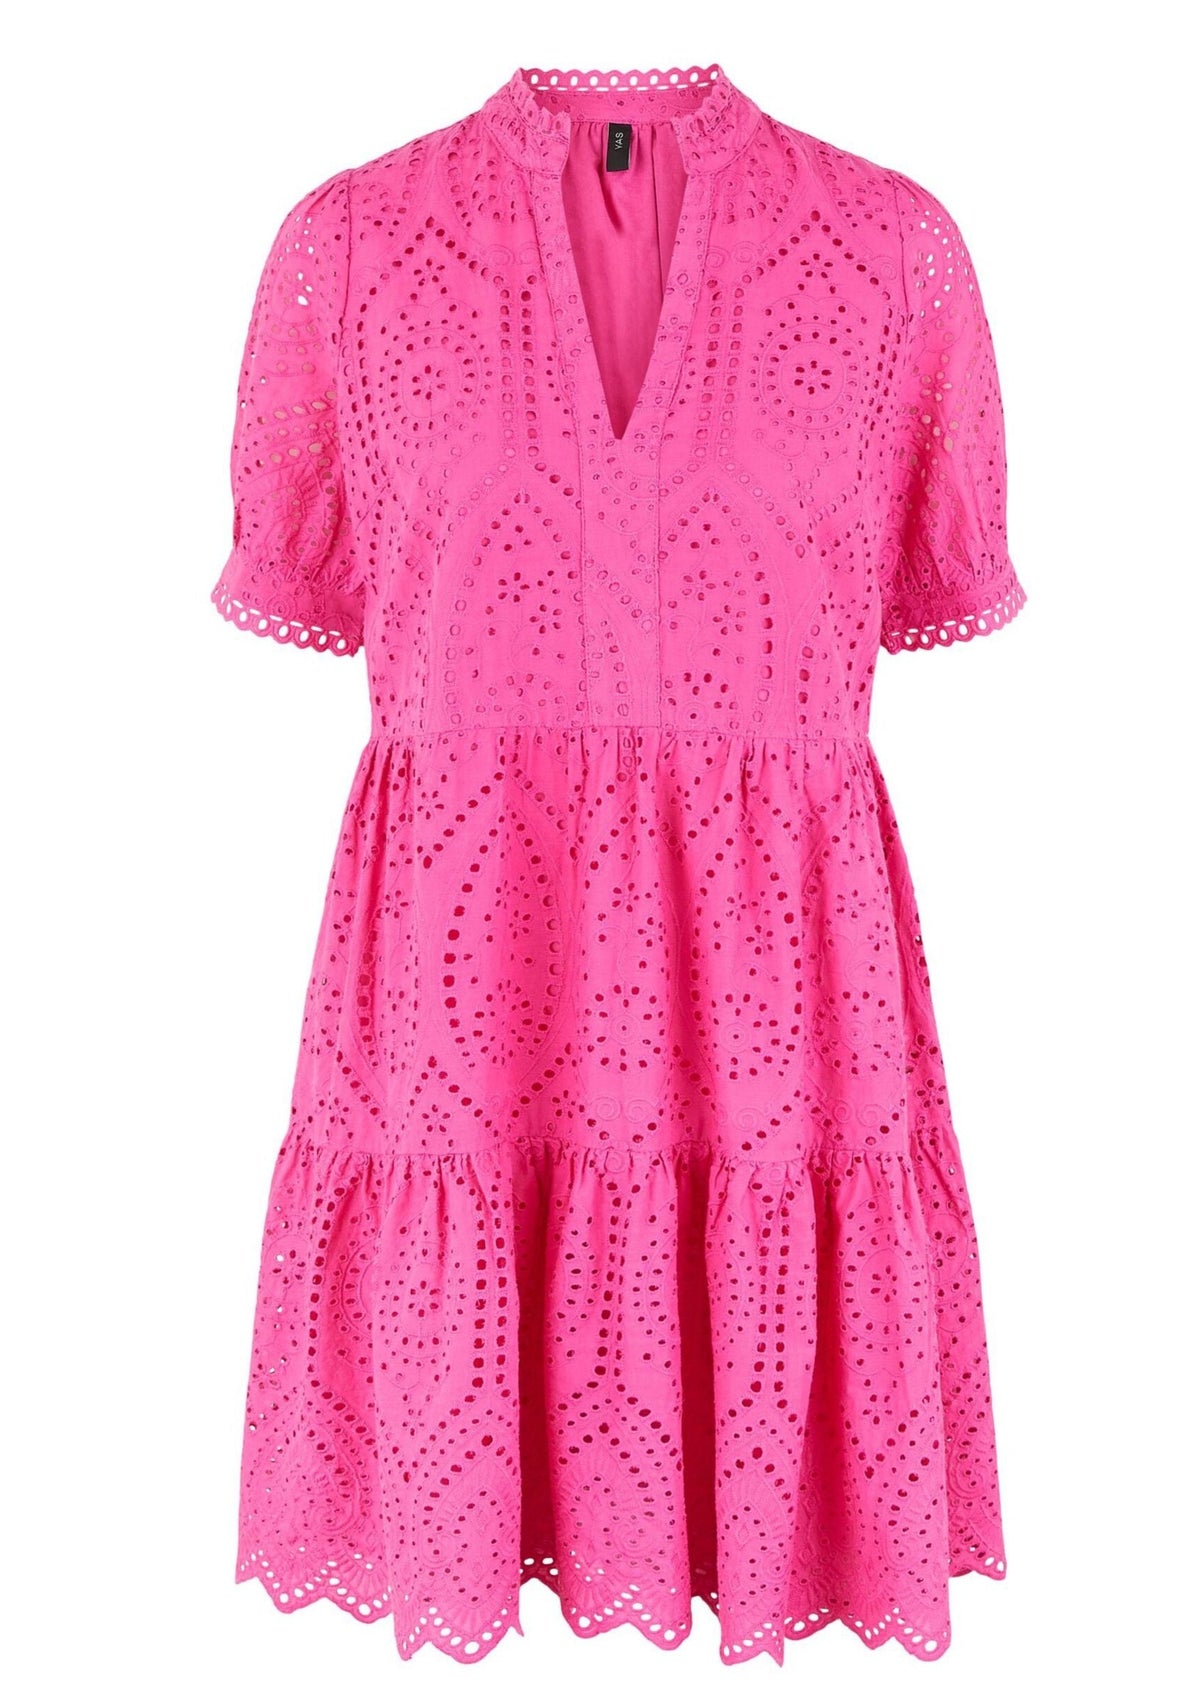 And YAS Holi Cotton Dress - Fandango Pink Hudson – Heidi